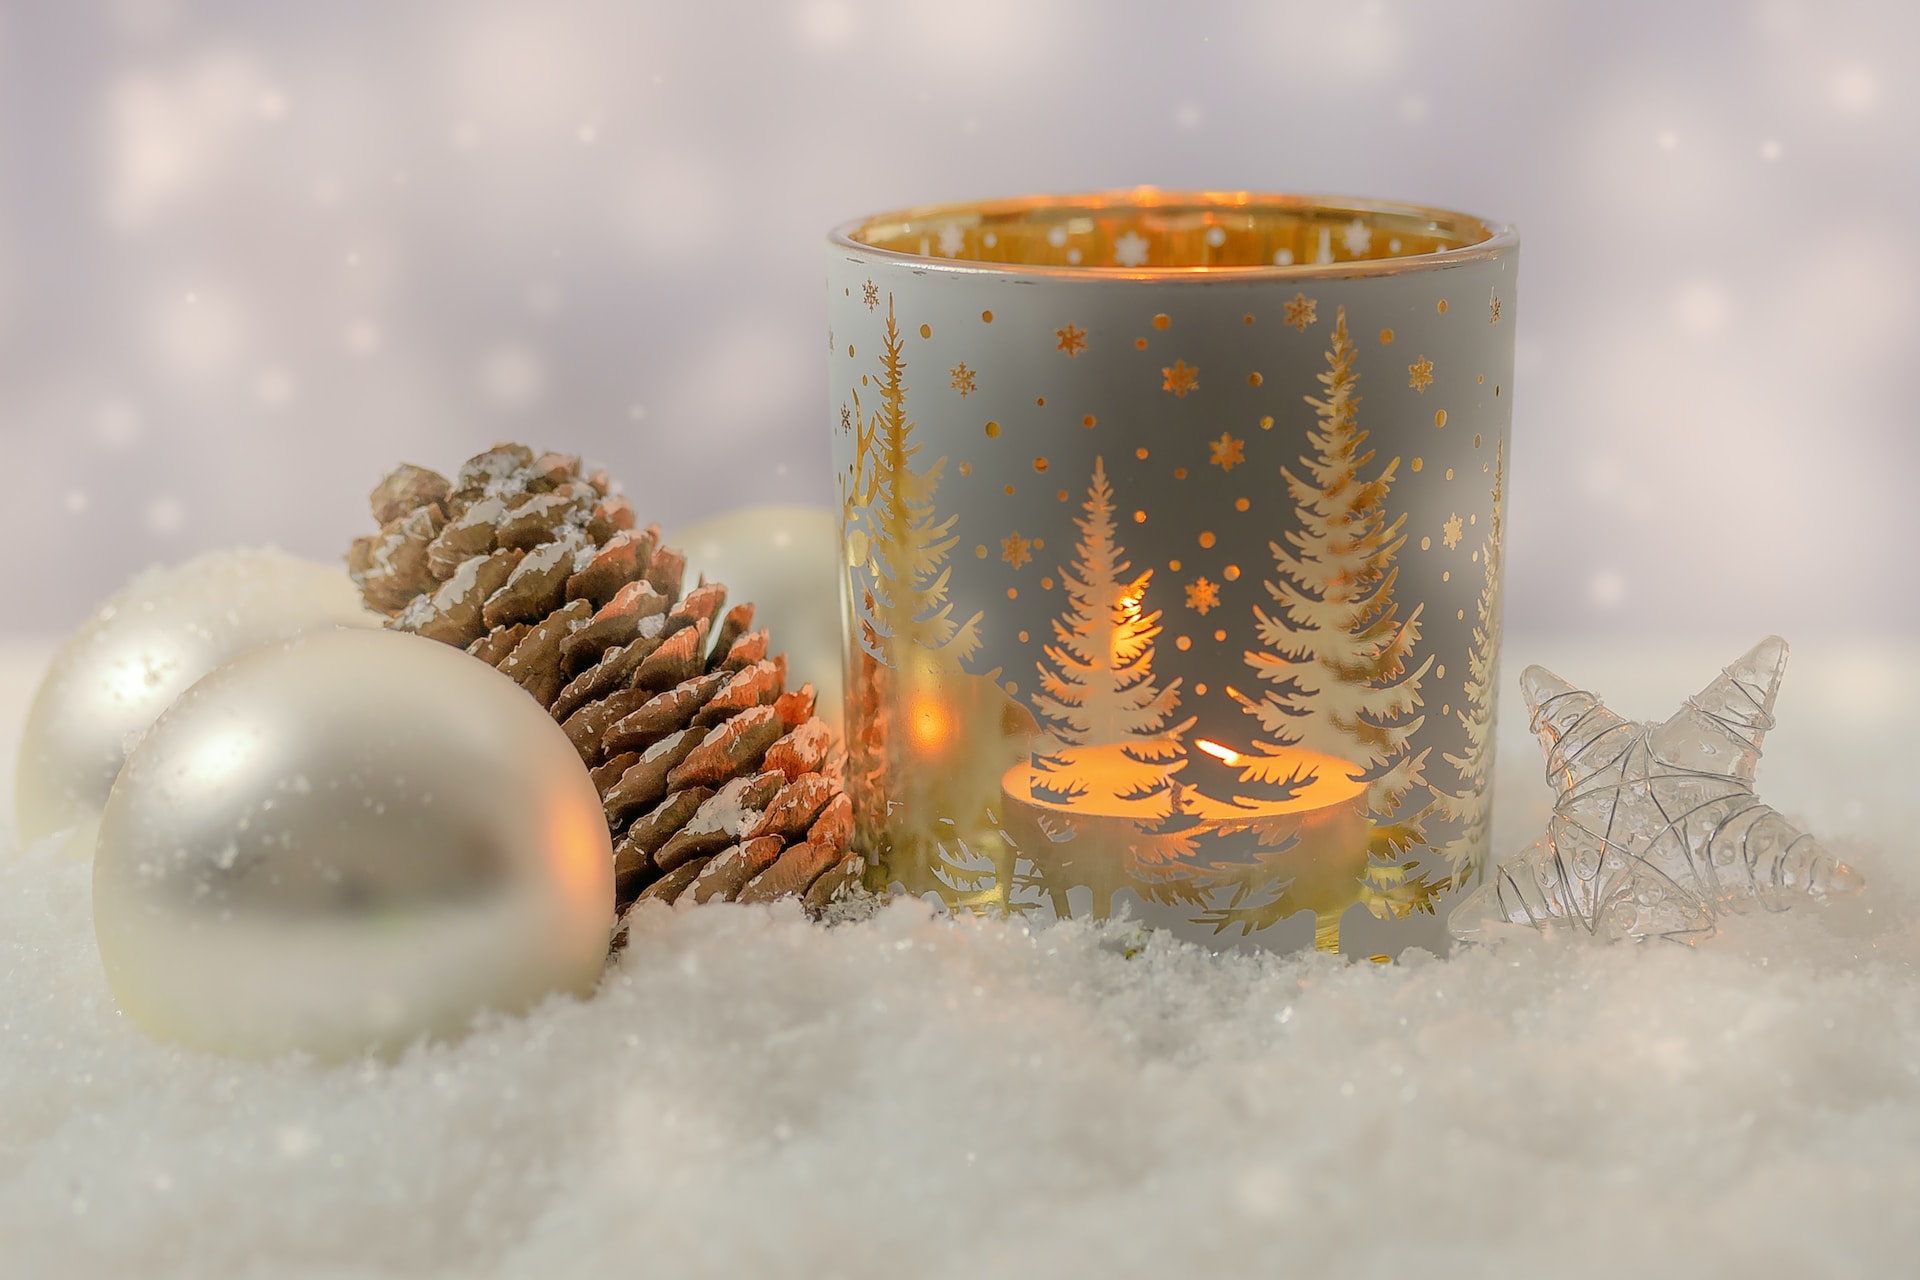 Svícen s vánočními motivy: koupíte, nebo vyrobíte?